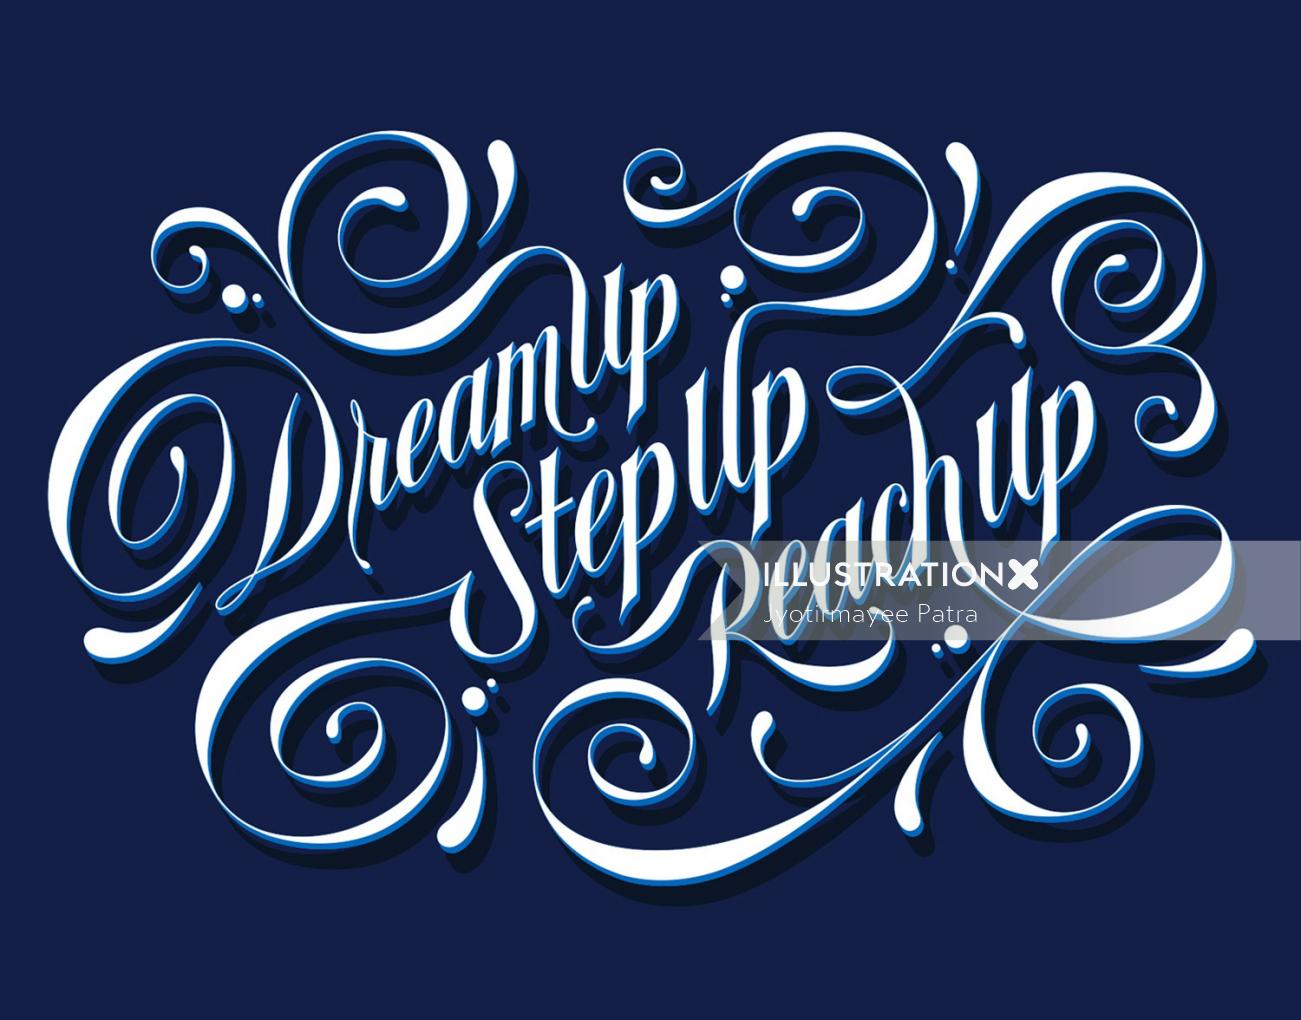 Custom mural lettering dreamup, stepup, reachup